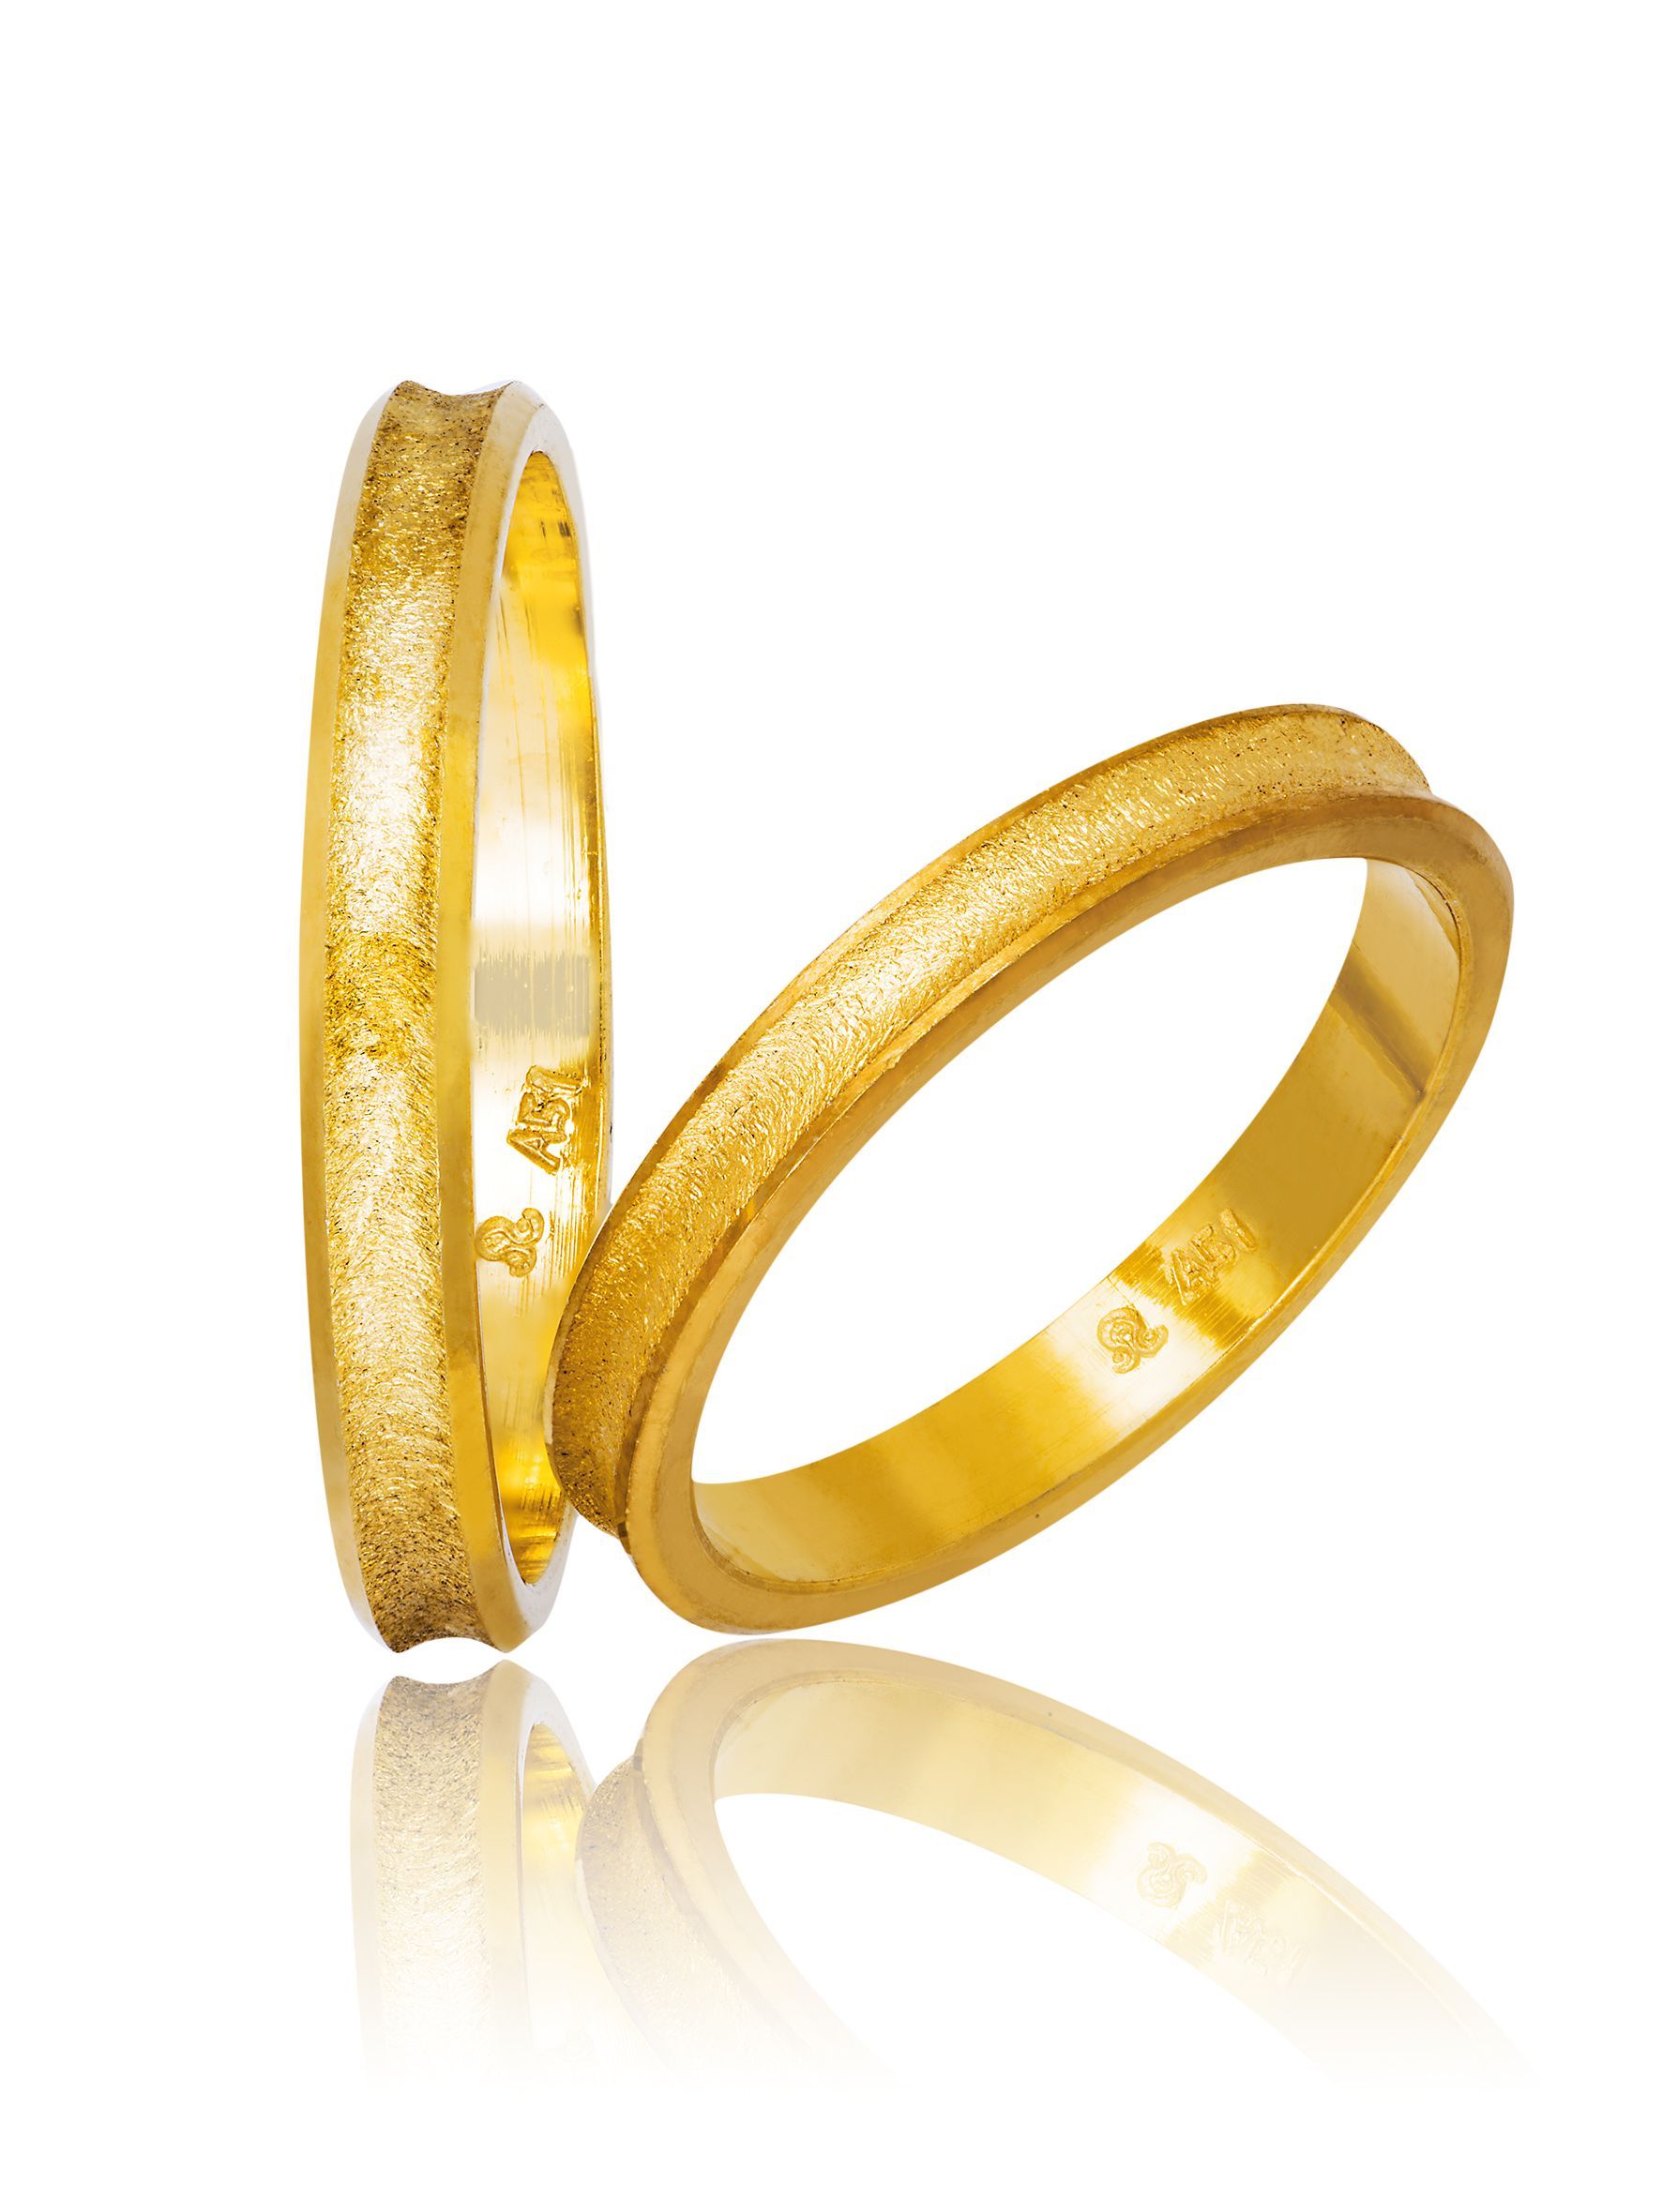 Golden wedding rings (code 752)